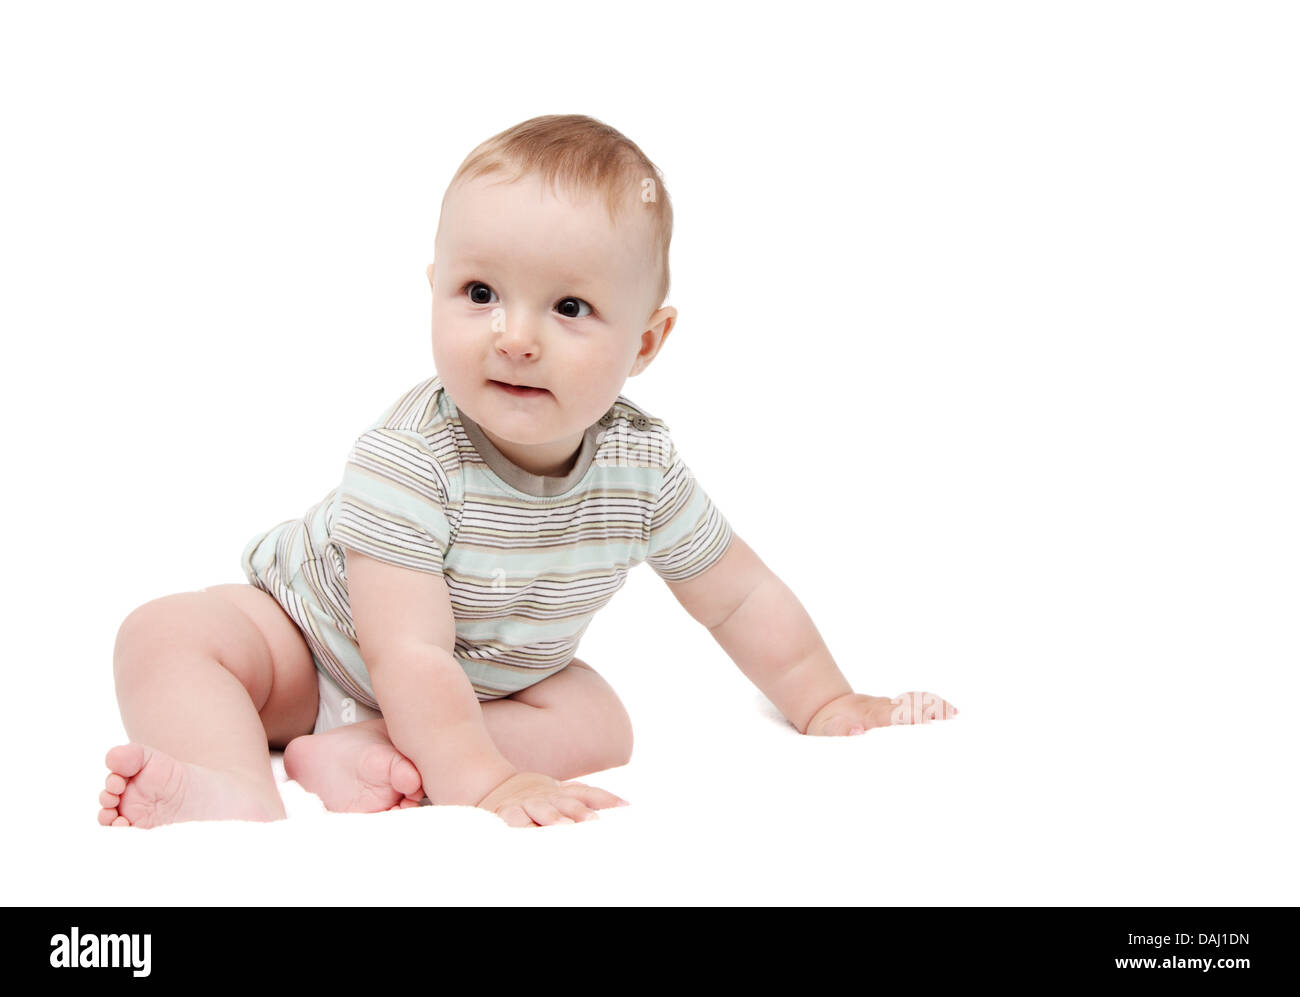 beautiful happy baby boy sitting on white background Stock Photo